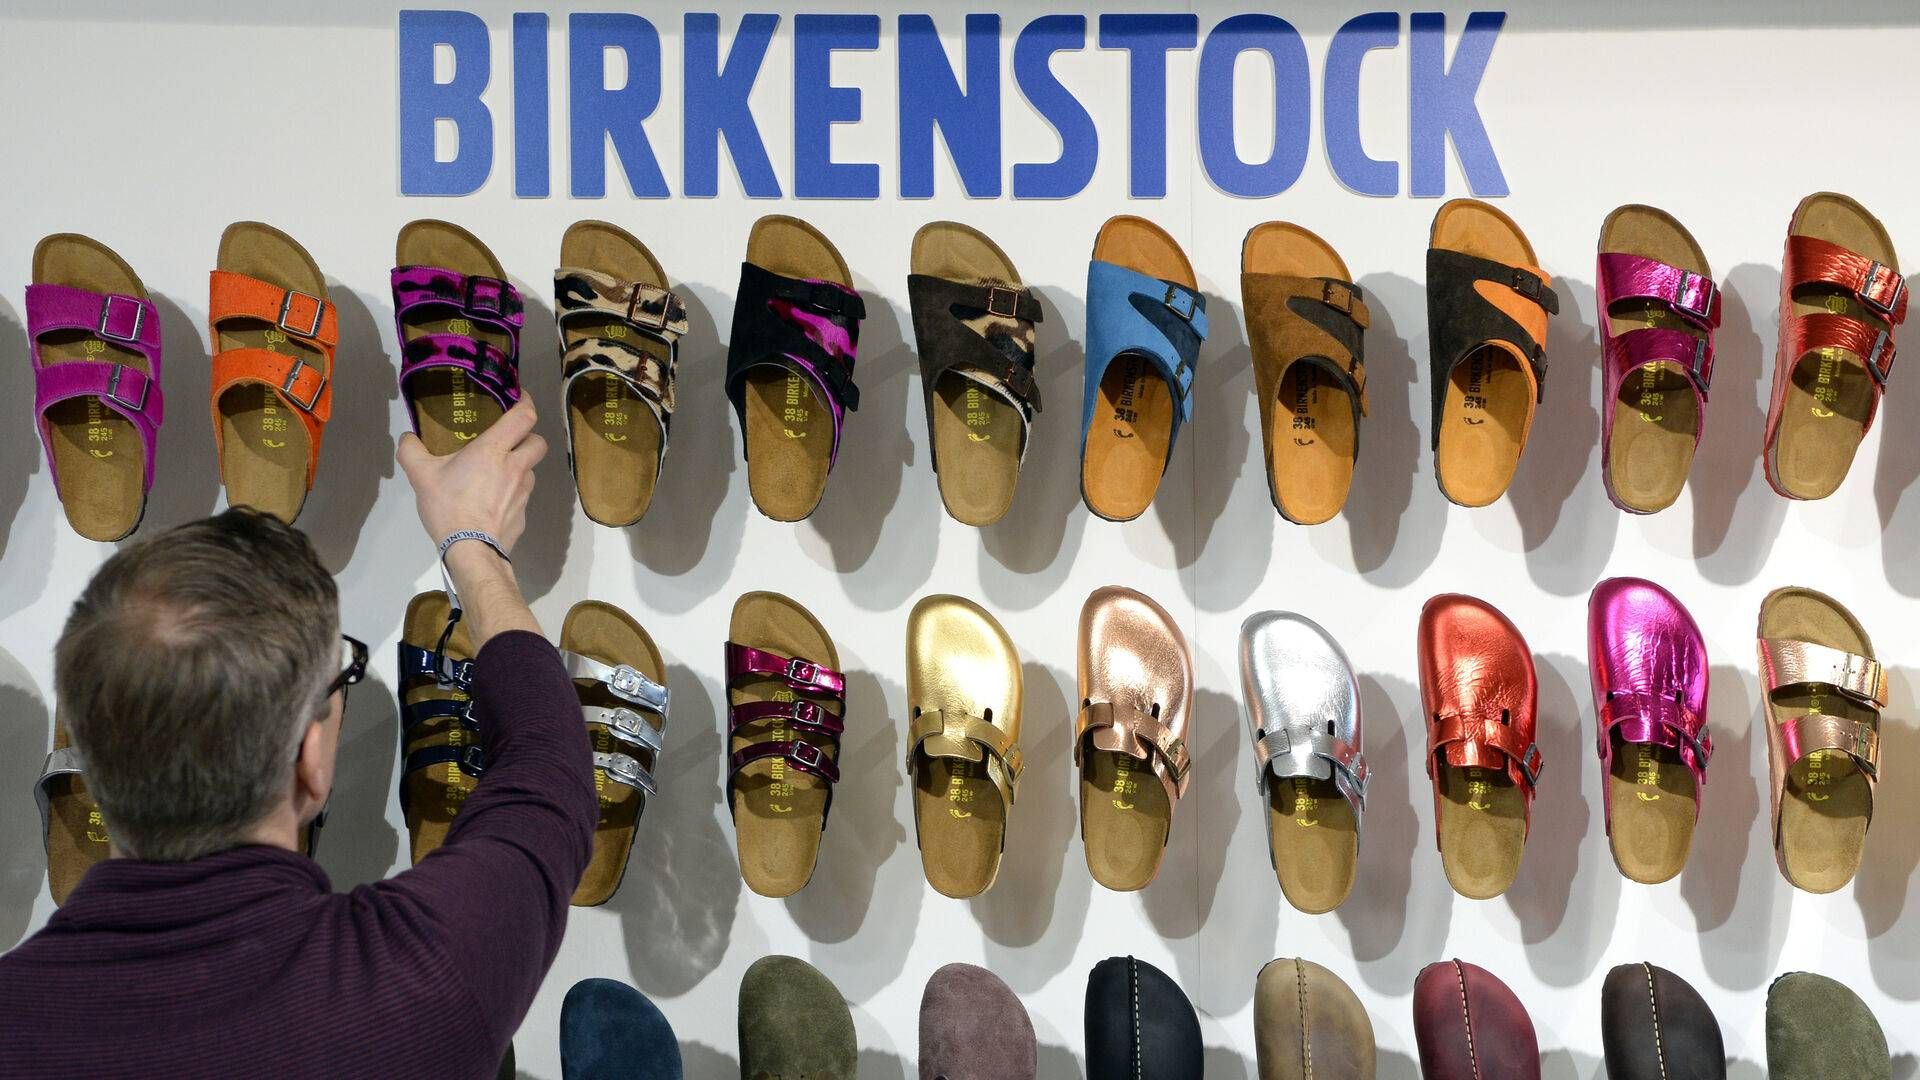 bleg Charles Keasing resterende Medier: Fransk milliardær planlægger børsnotering af Birkenstock